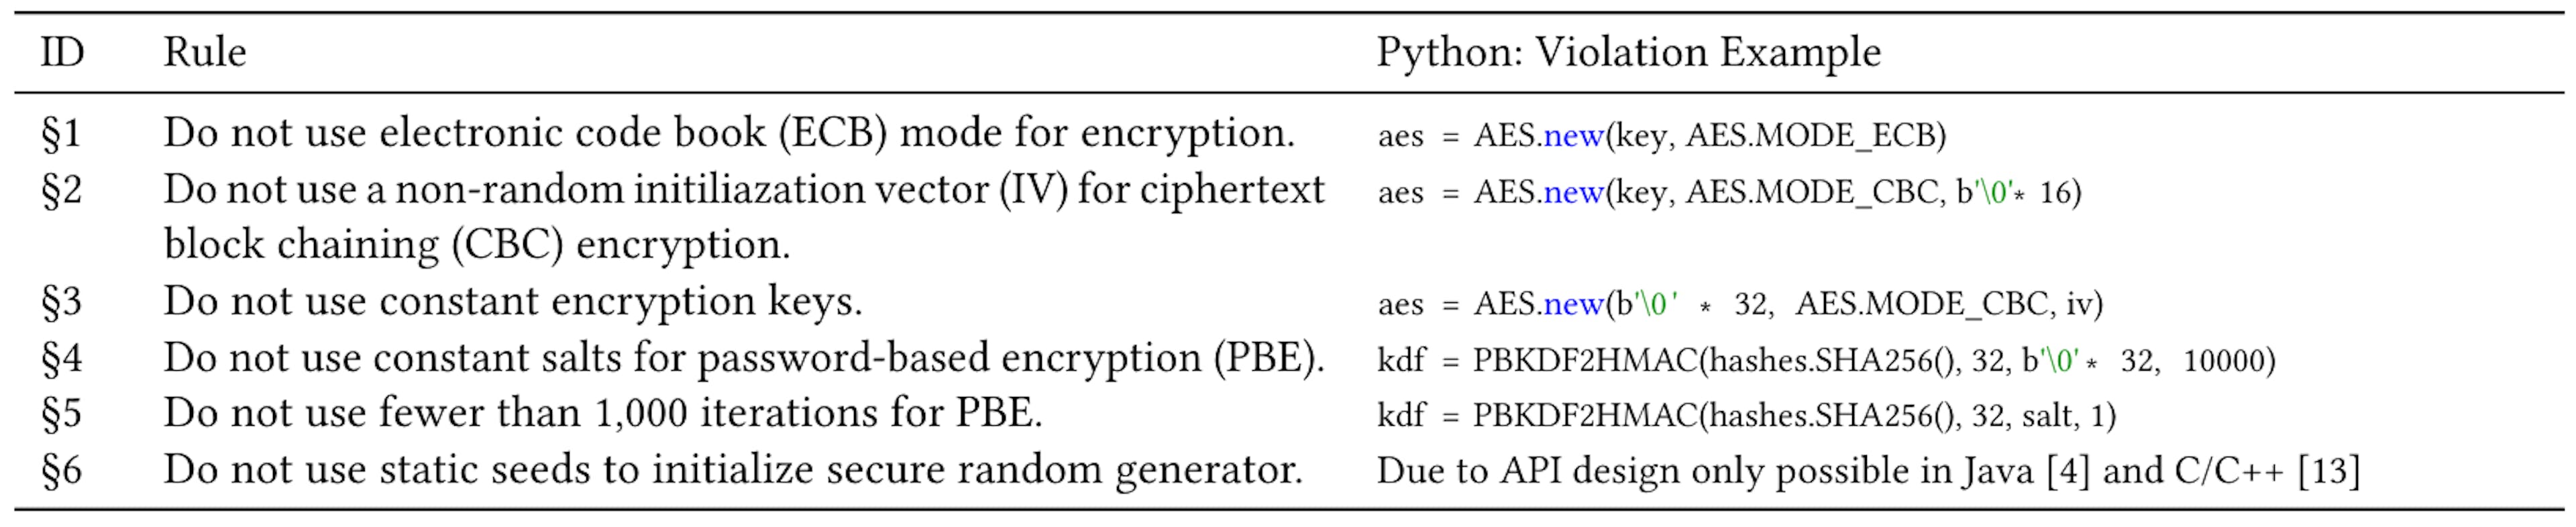 Tabela 1: Seis usos indevidos de criptografia comumente discutidos em Java e C [4, 13] com um exemplo de violação em Python.